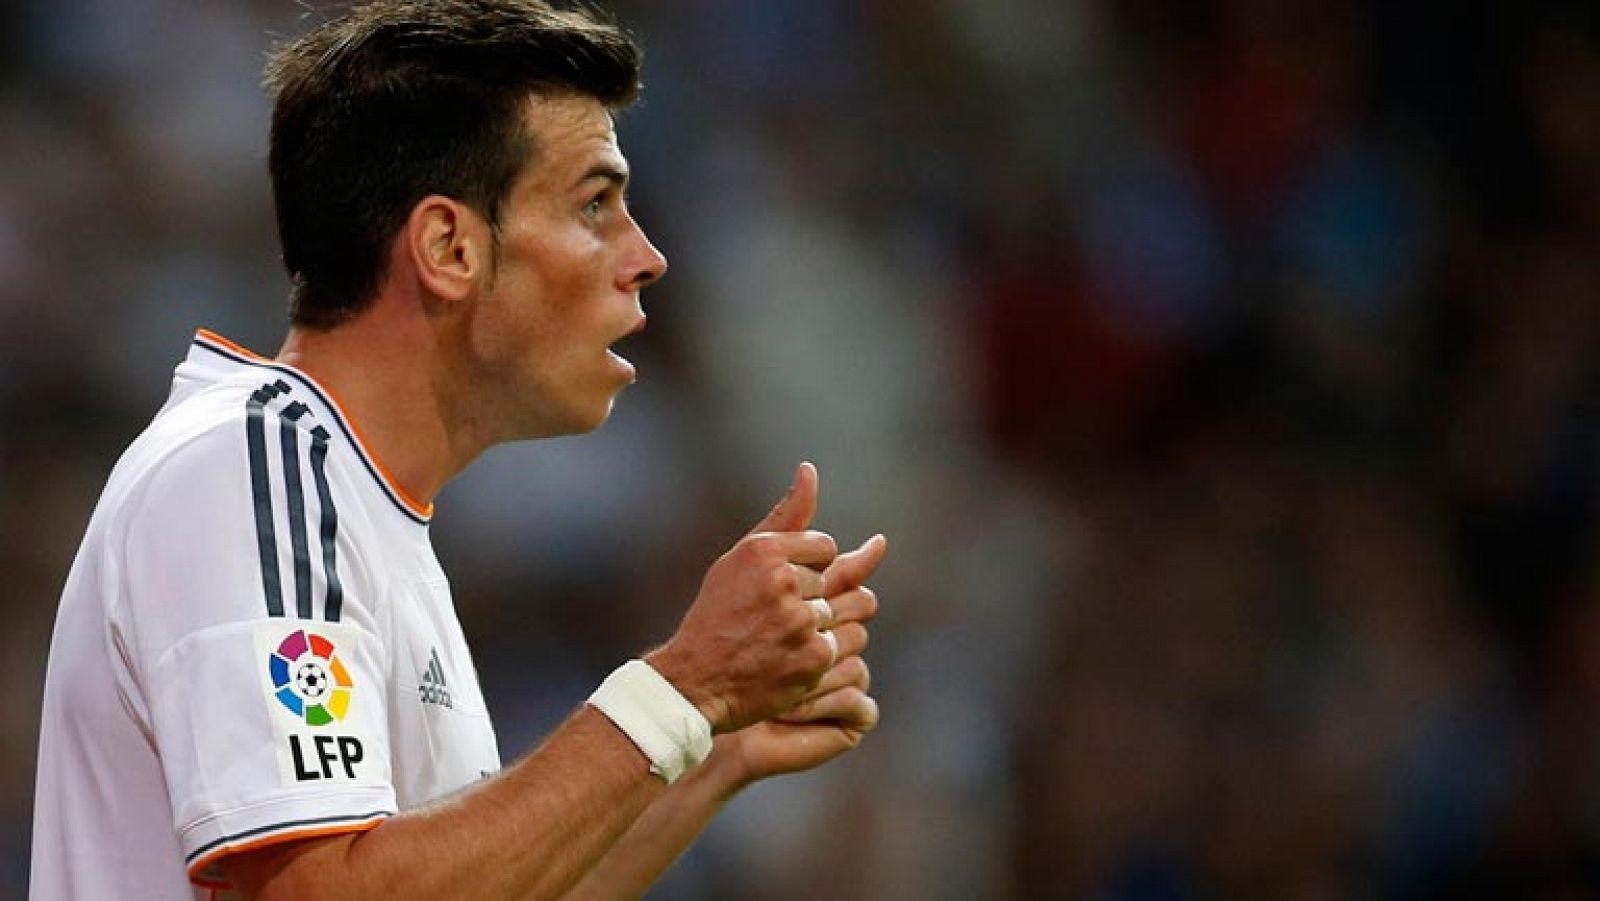 Telediario 1: El Madrid admite una protrusión discal de Bale, pero niega que tenga una hernia | RTVE Play